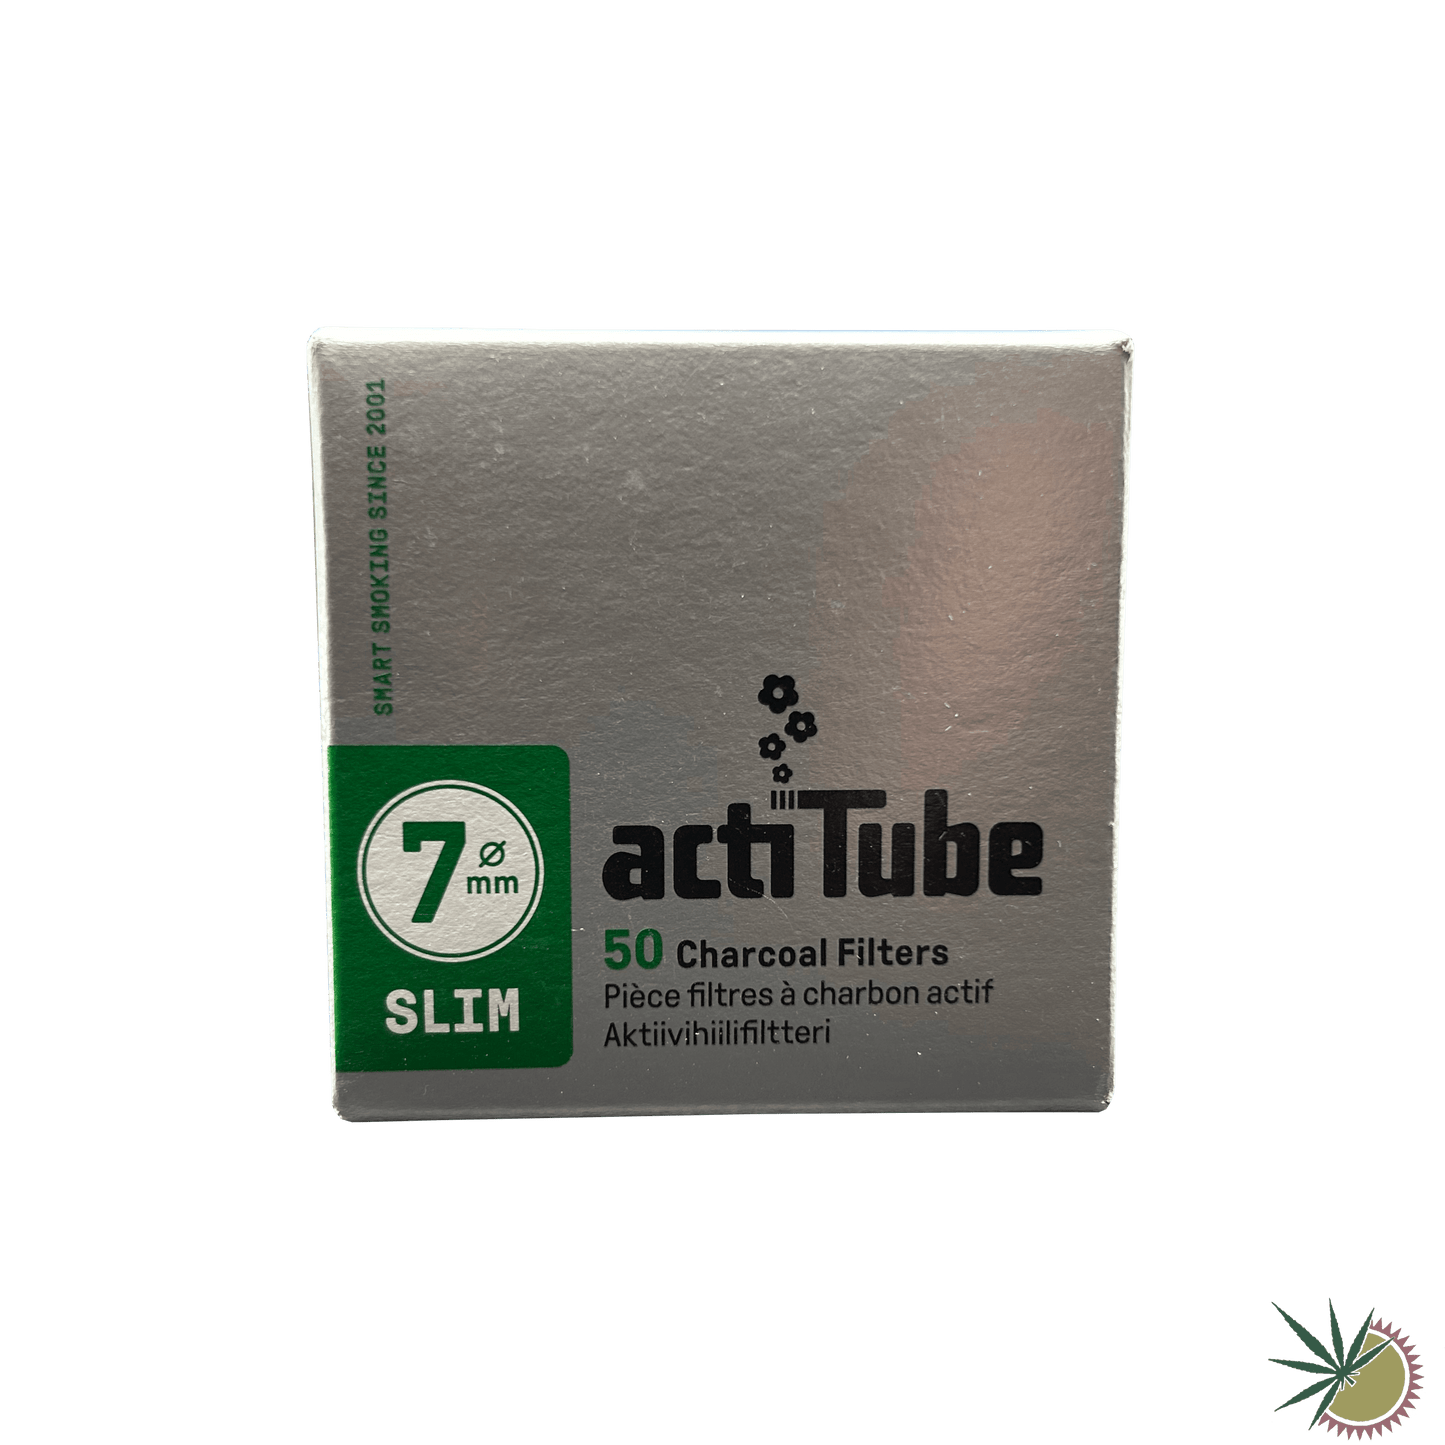 ActiTube Slim Aktivkohlefilter Ø7mm 1 Packung á 50 Stück - THC Headshop